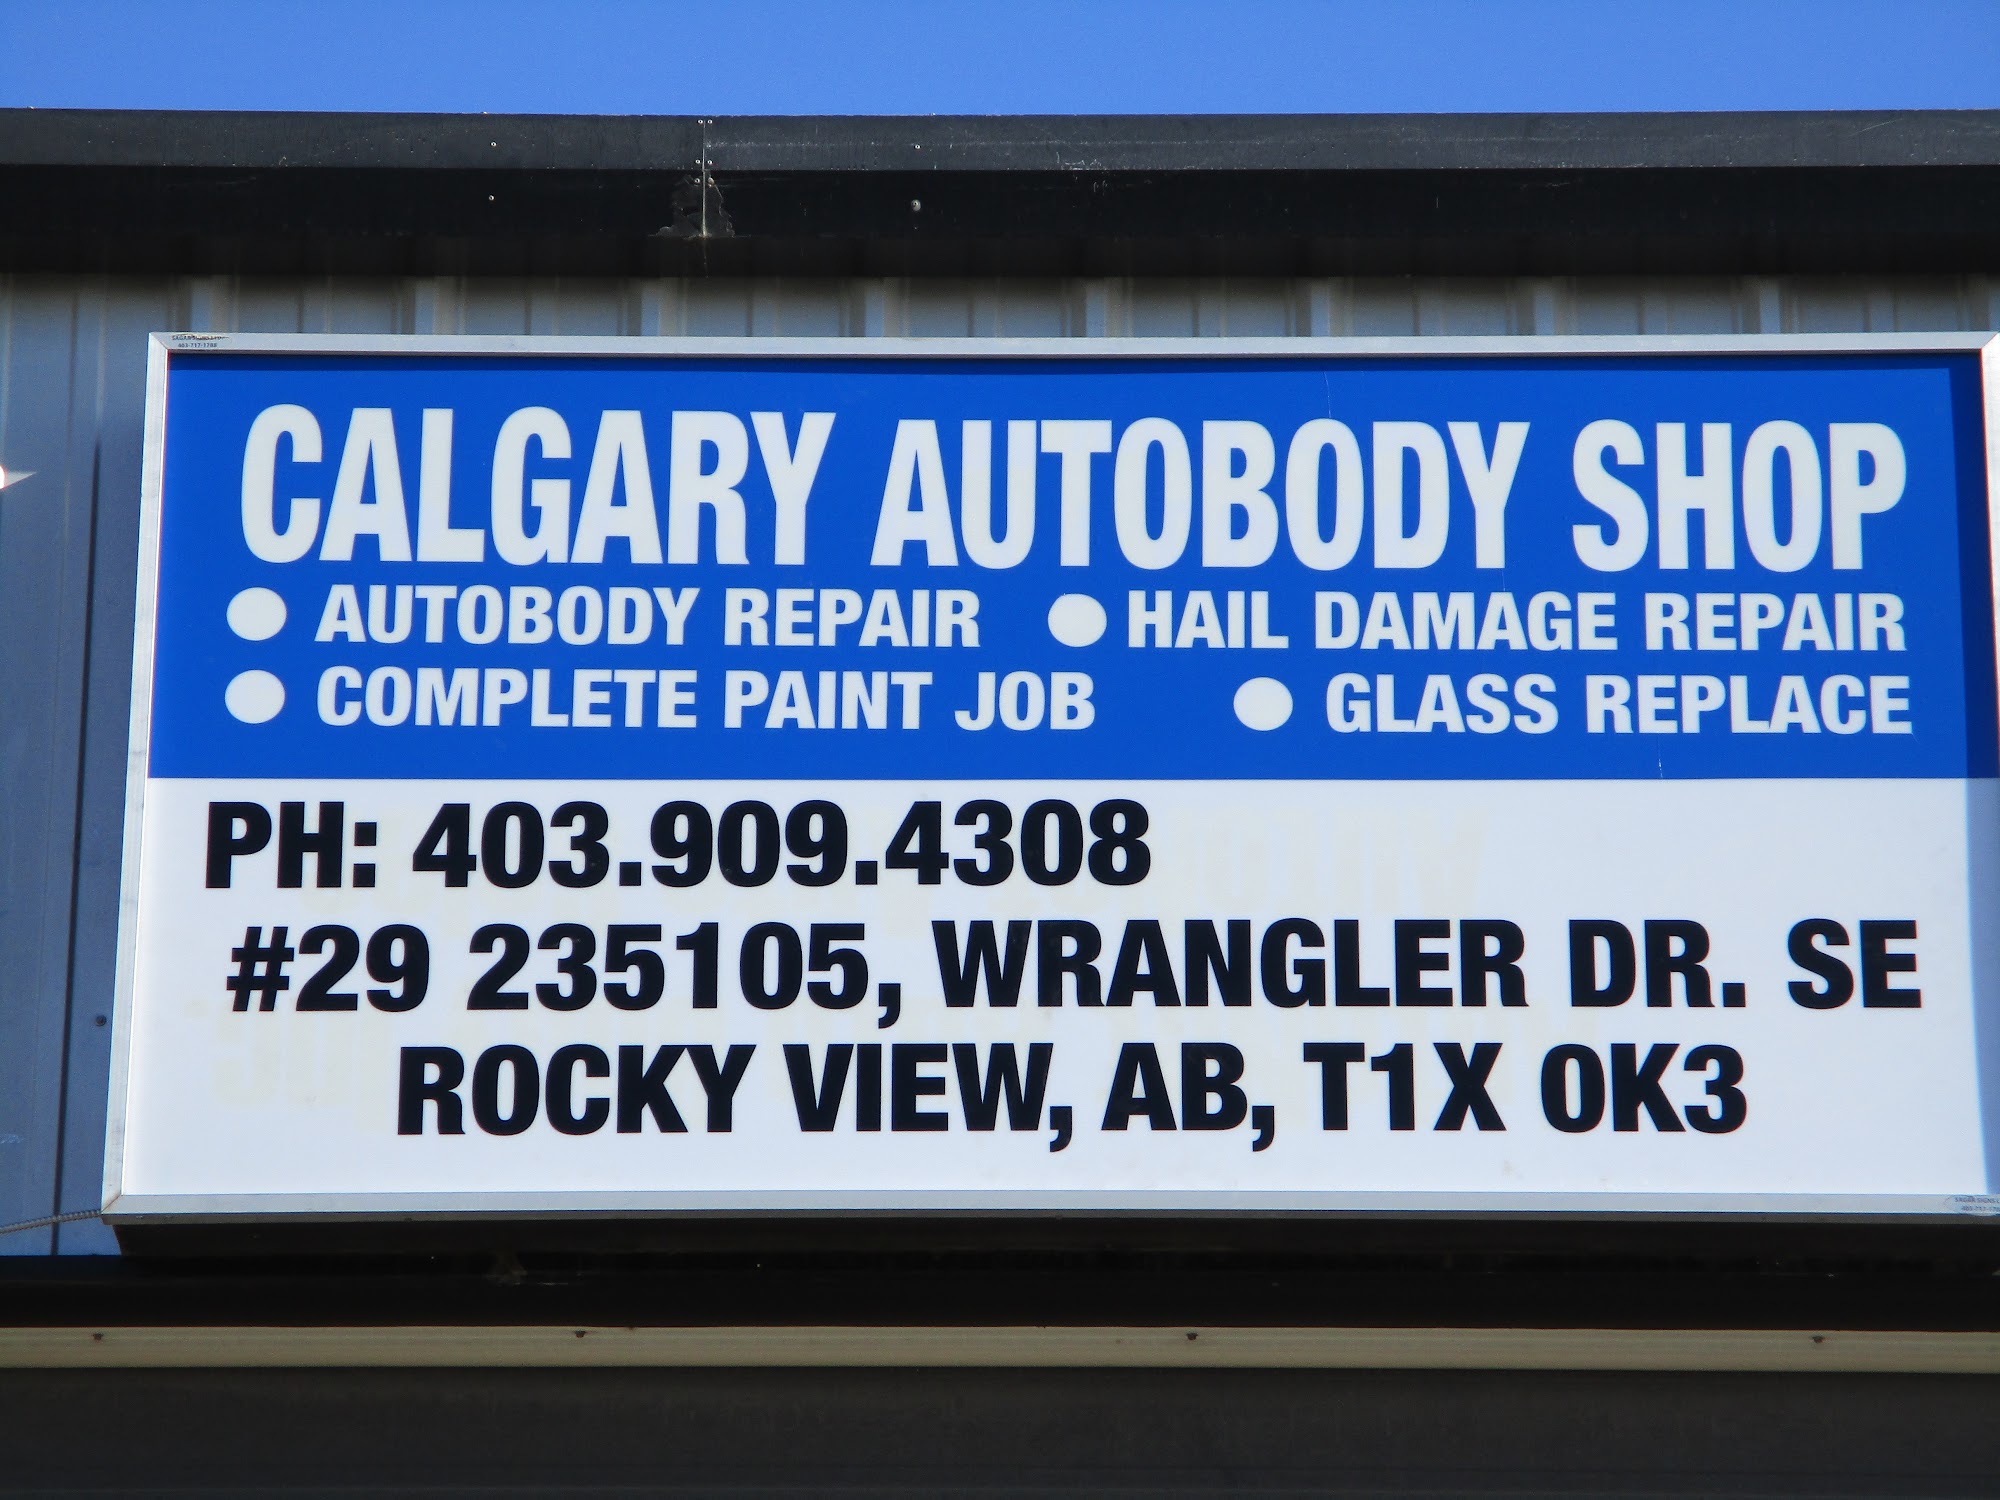 Calgary Autobody Shop | Auto Body Repair Shop in Calgary